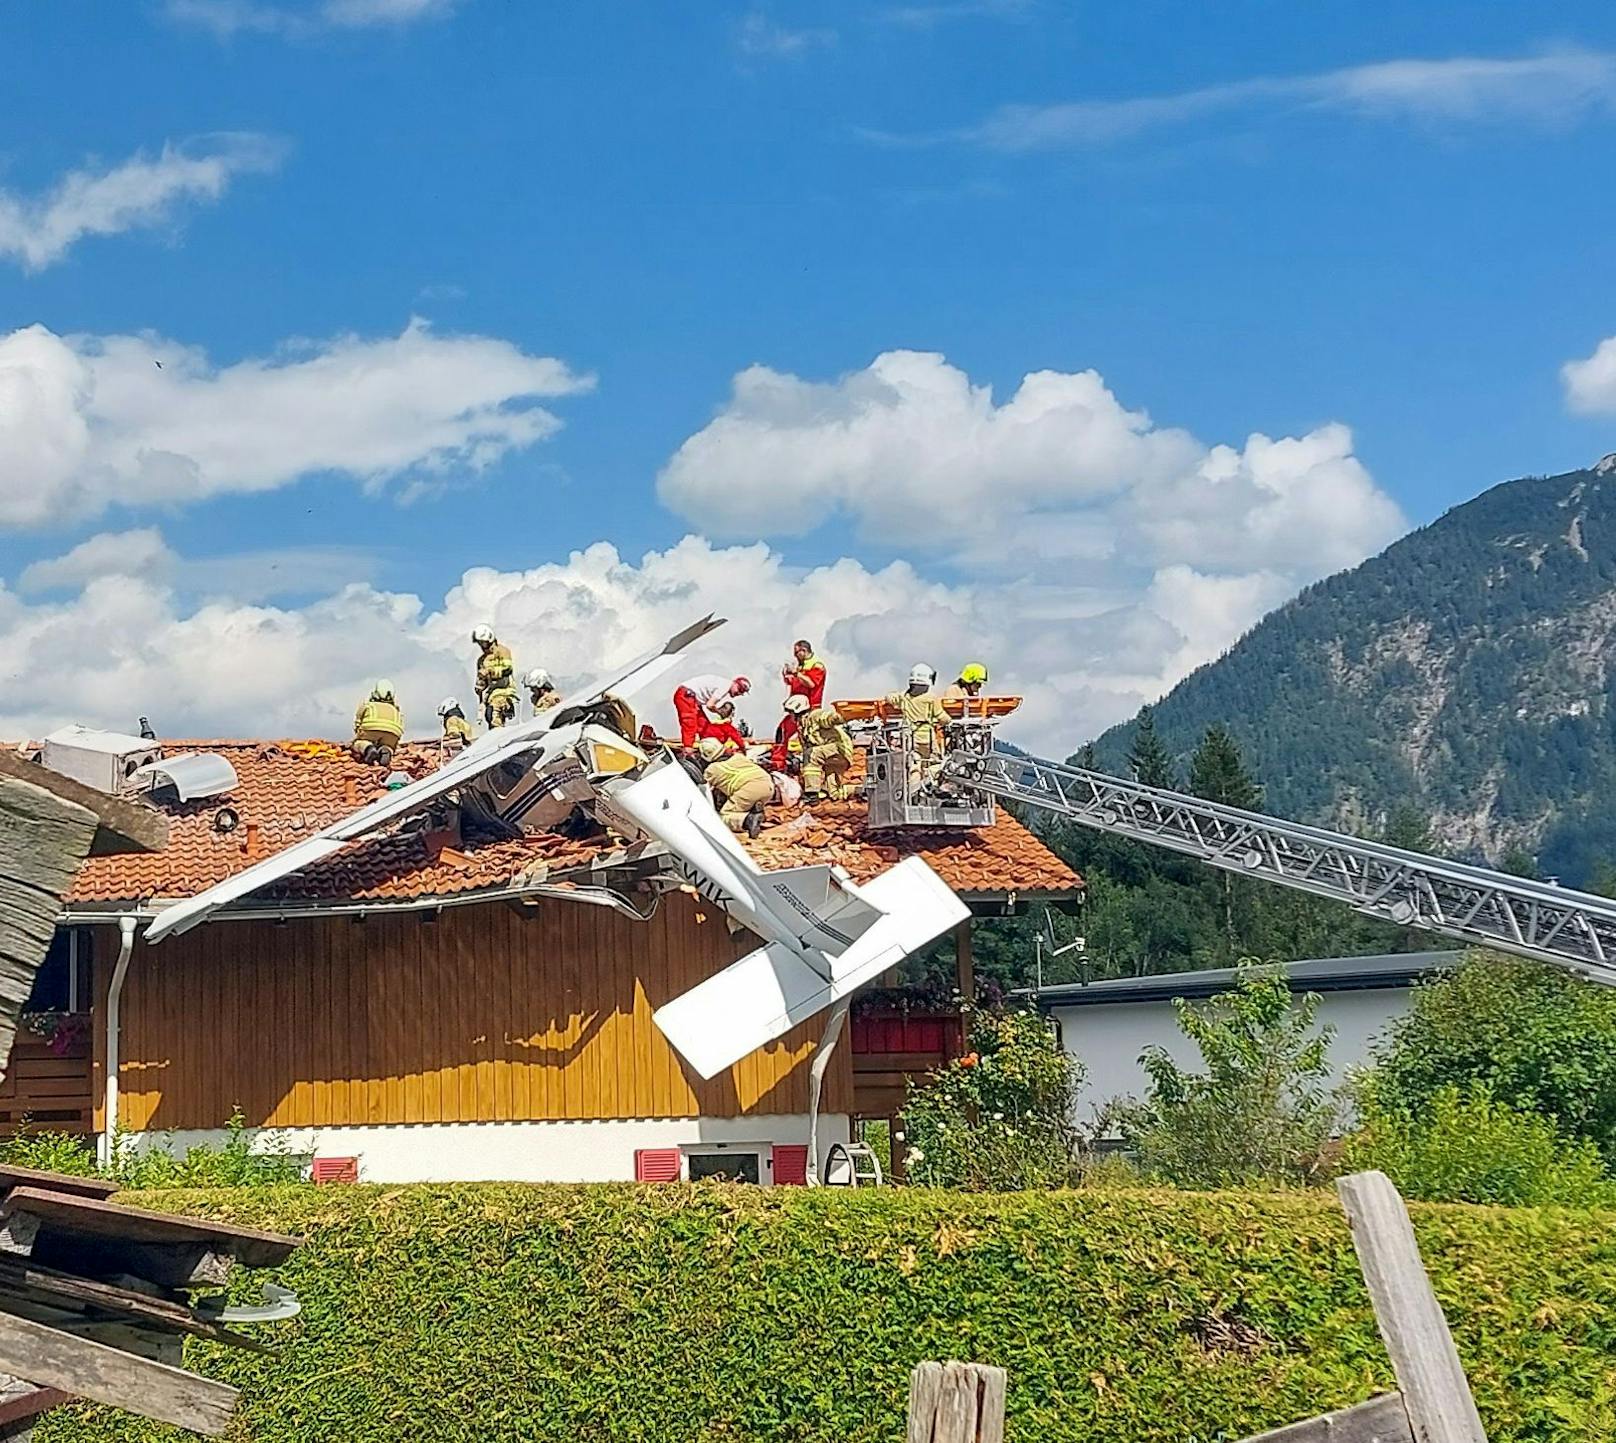 Zwei Schwerverletzte – Flugzeug stürzt auf Hausdach